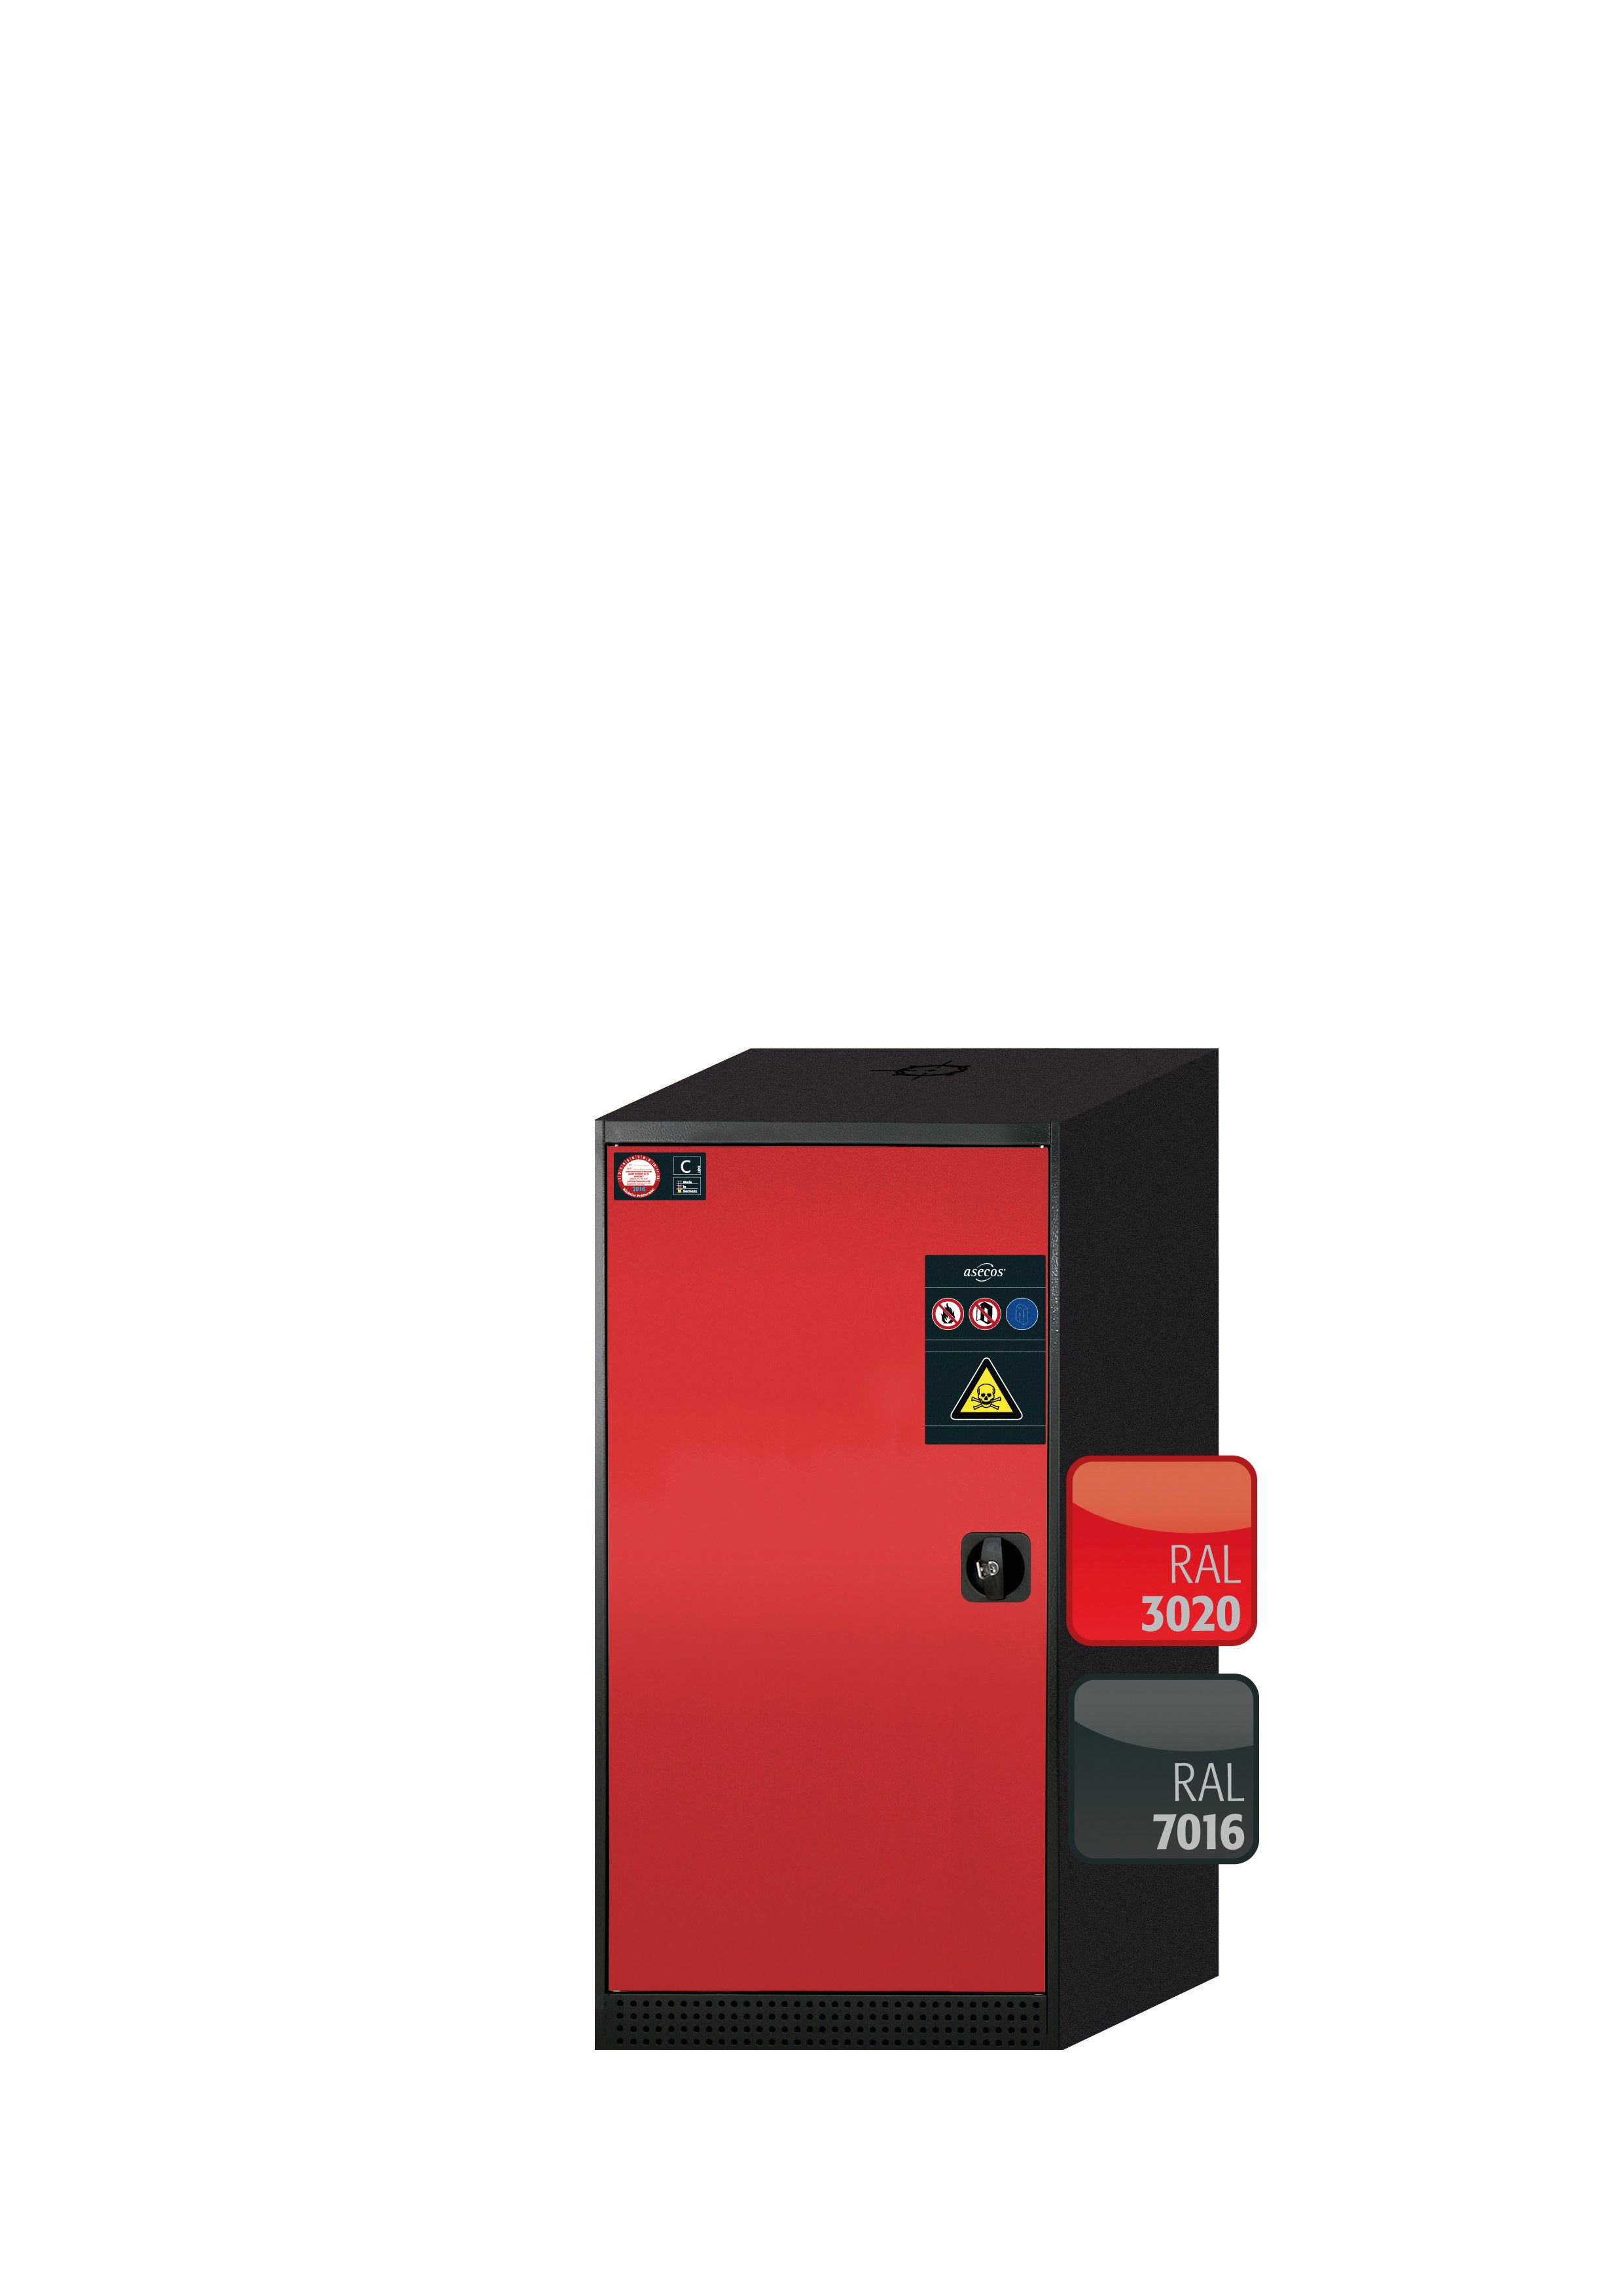 Armoire chimique CS-CLASSIC modèle CS.110.054 en rouge signalisation RAL 3020 avec 2x étagères standard (tôle d'acier)